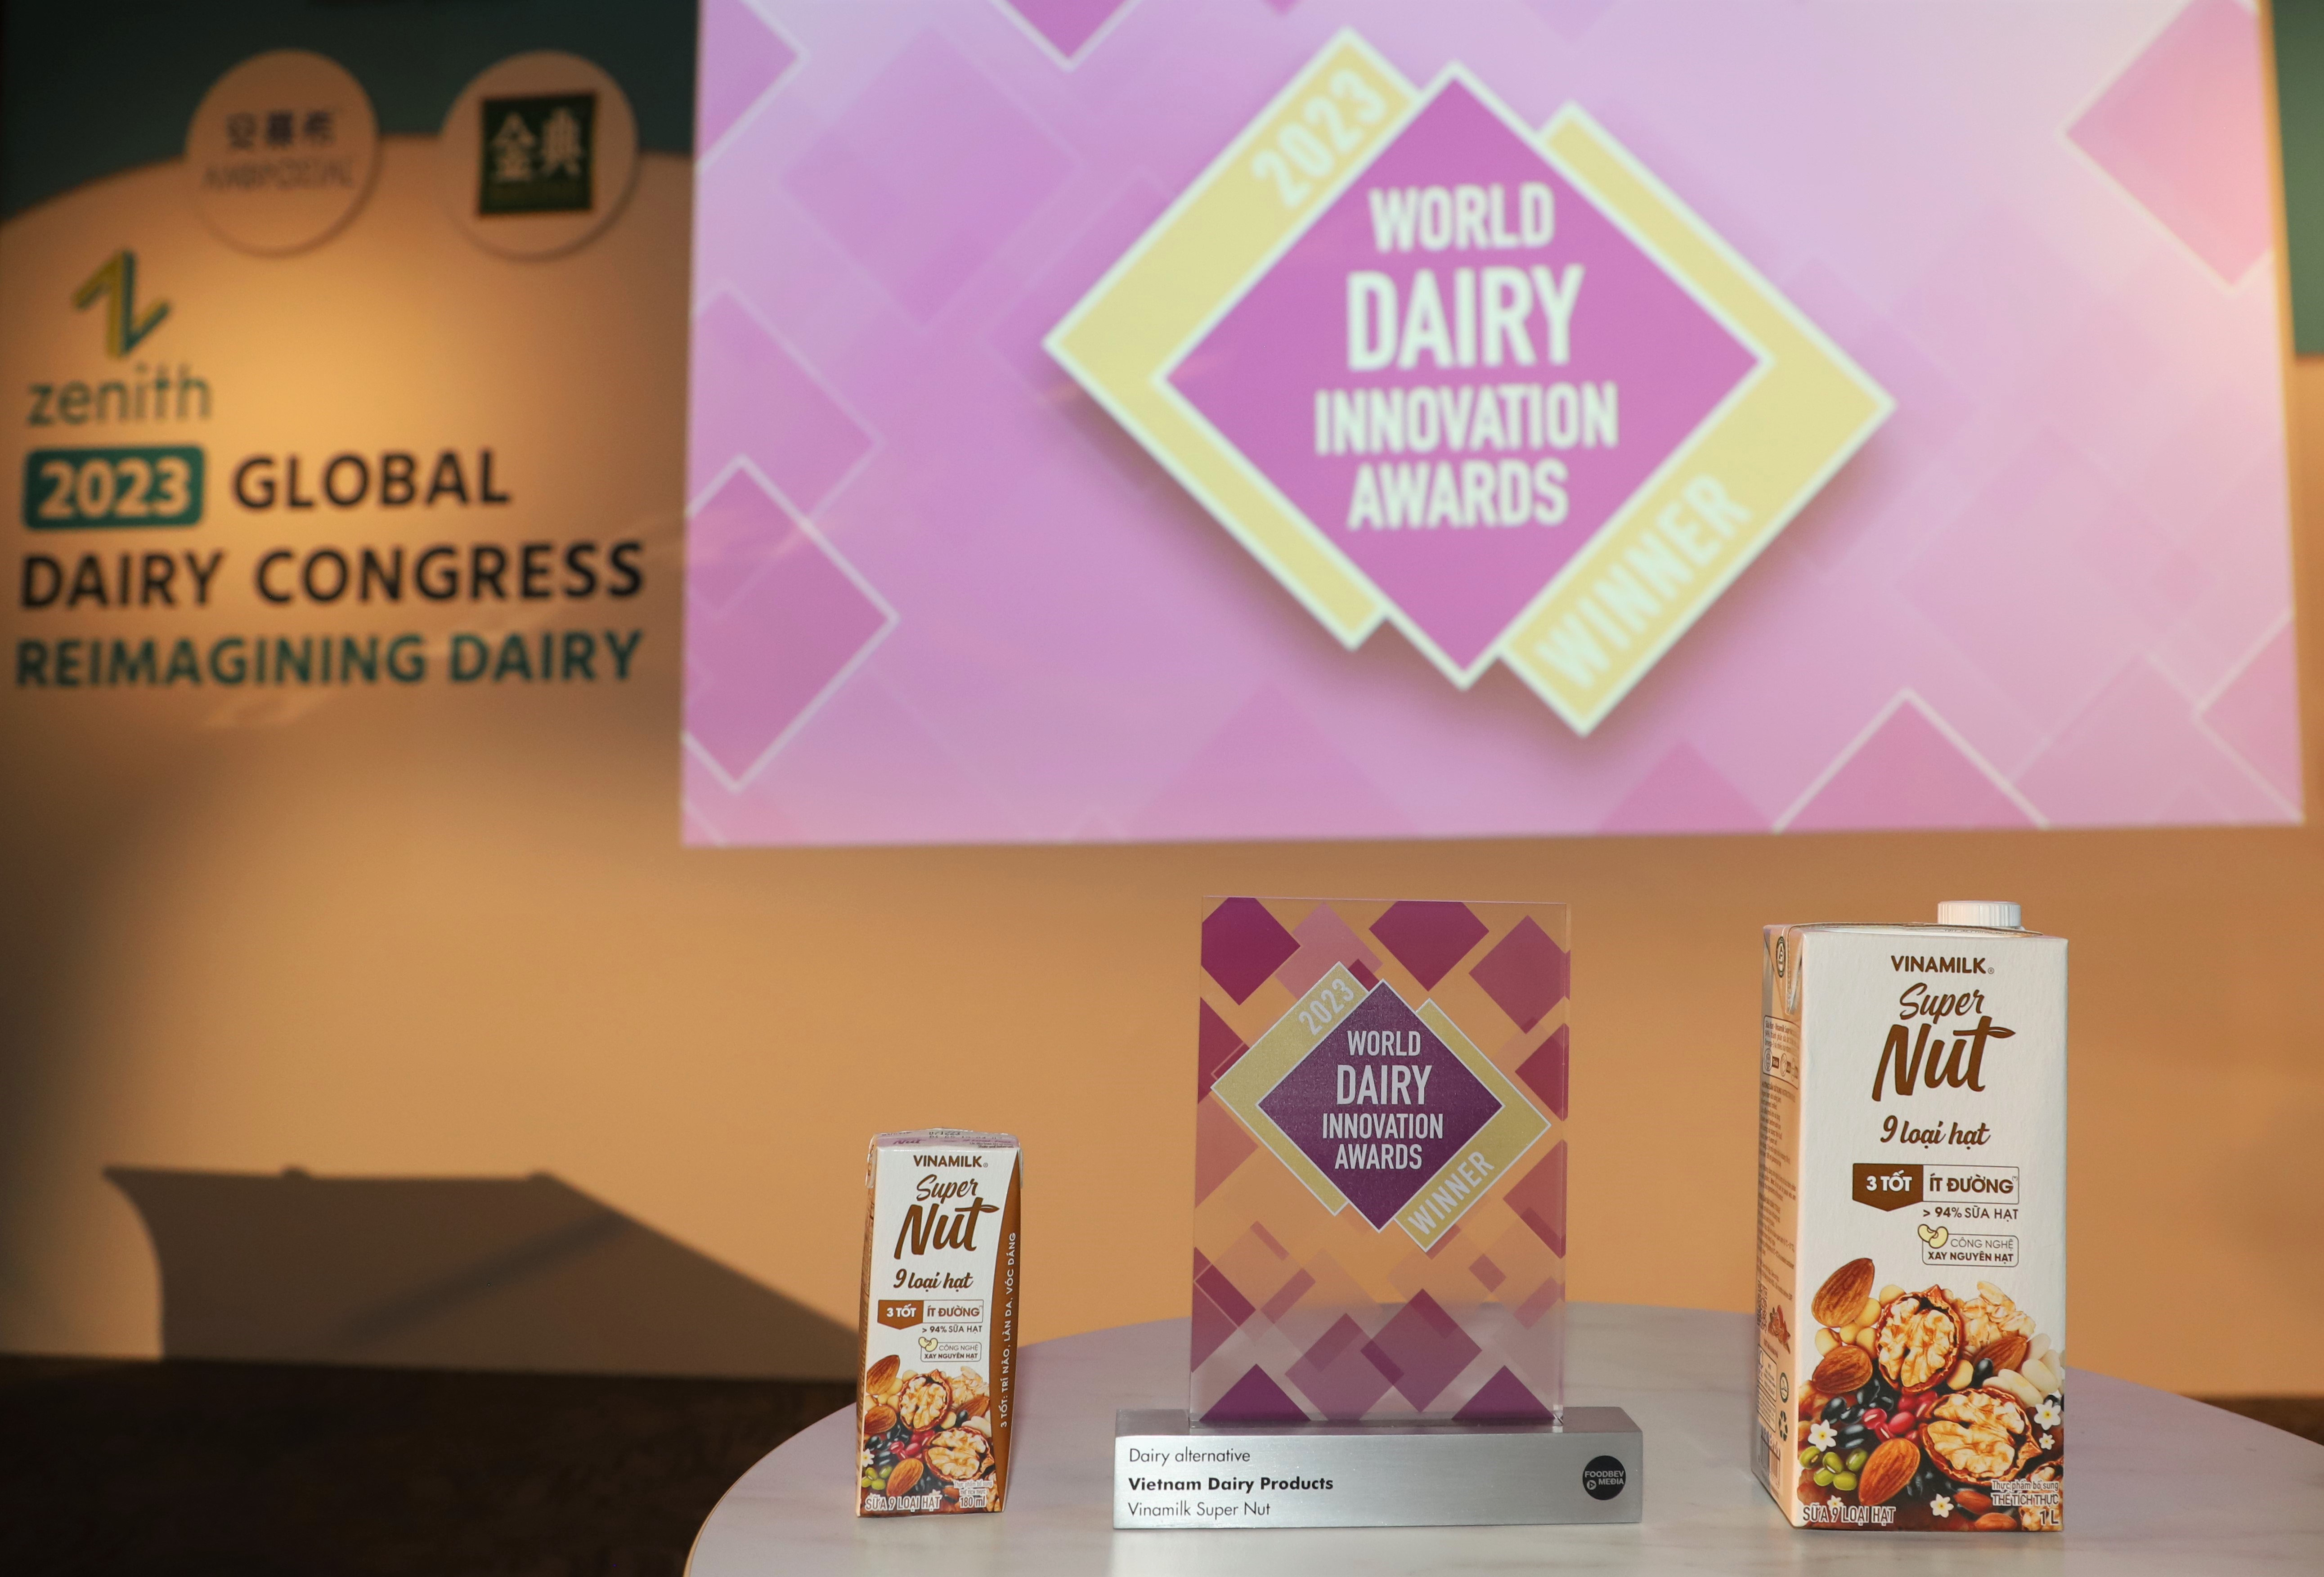 Tại Hội nghị sữa to&agrave;n cầu 2023 mới đ&acirc;y, Sữa 9 loại hạt Vinamilk Super Nut l&agrave; sản phẩm được vinh danh &ldquo;qu&aacute;n qu&acirc;n&rdquo; tại giải thưởng The World Dairy Innovation Awards 2023 (Giải thưởng Ng&agrave;nh sữa to&agrave;n cầu về đổi mới năm 2023).